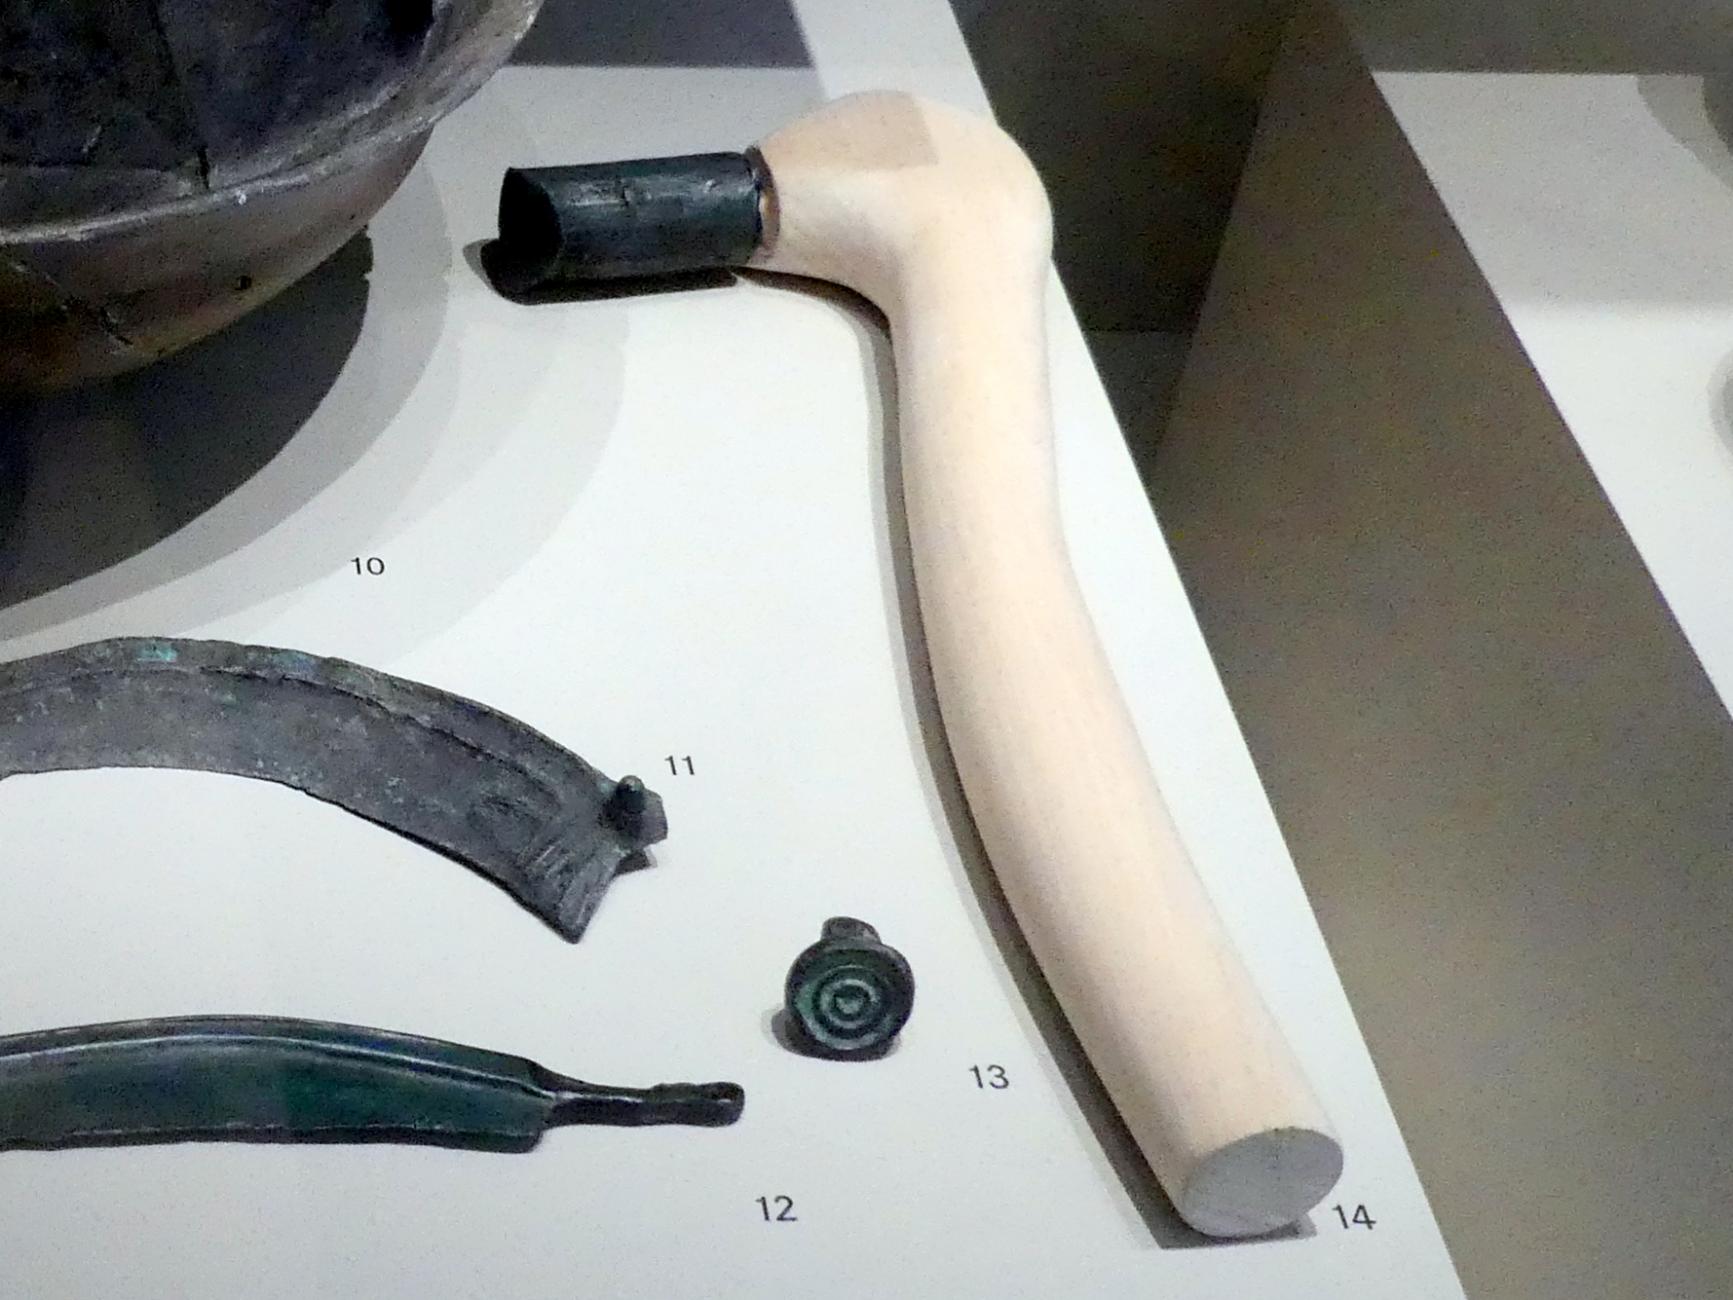 Tüllenhammer, 1100 - 900 v. Chr.